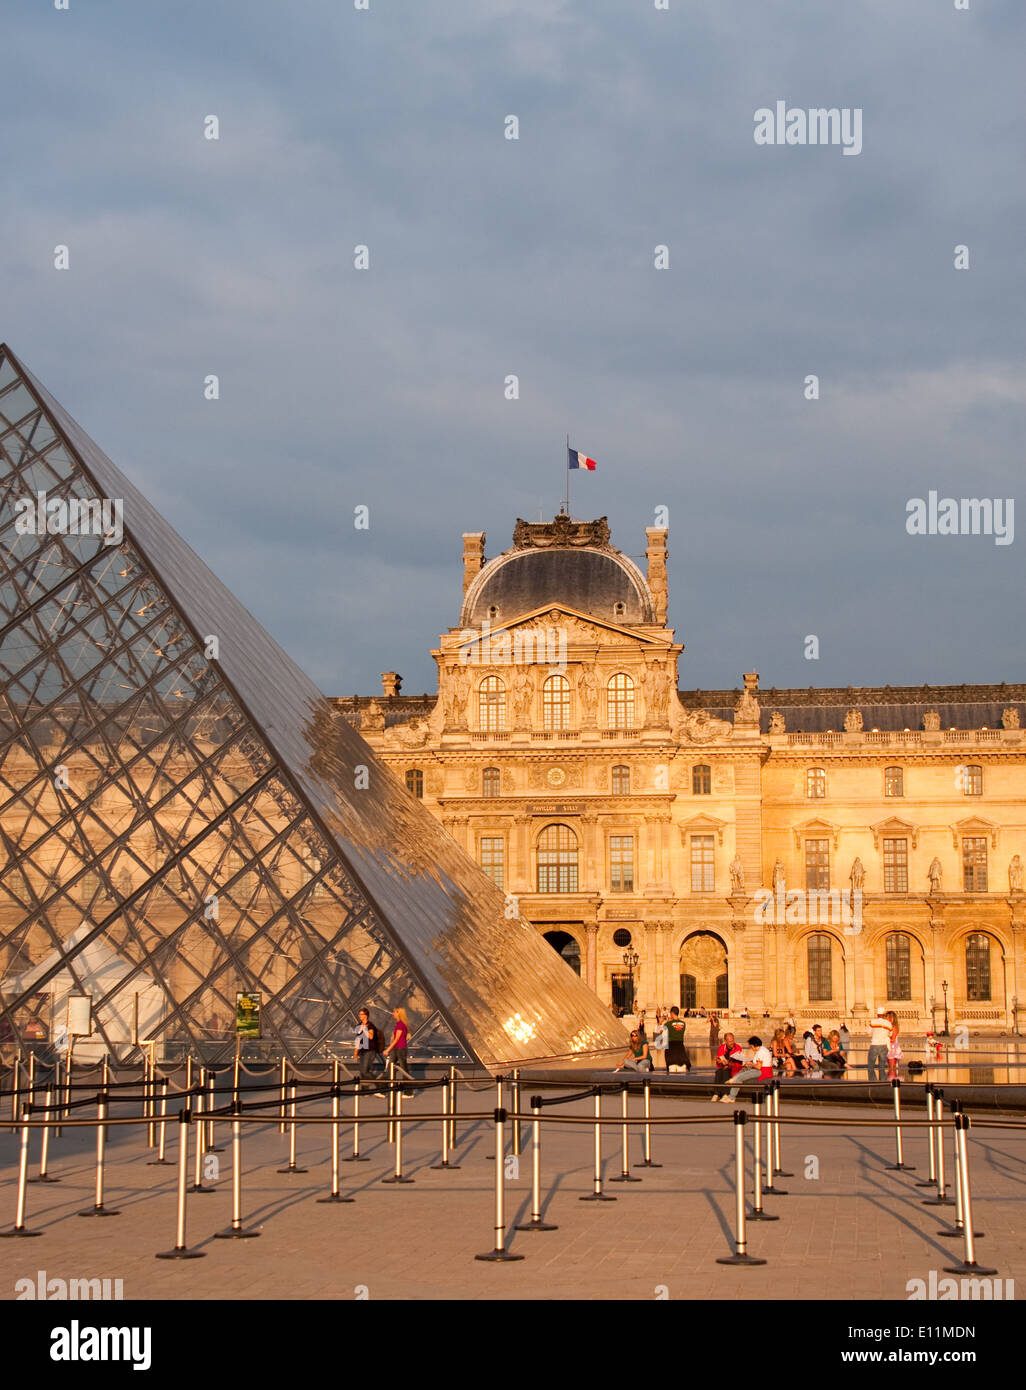 Louvre, Paris, Frankreich - Louvre, Paris, France Banque D'Images